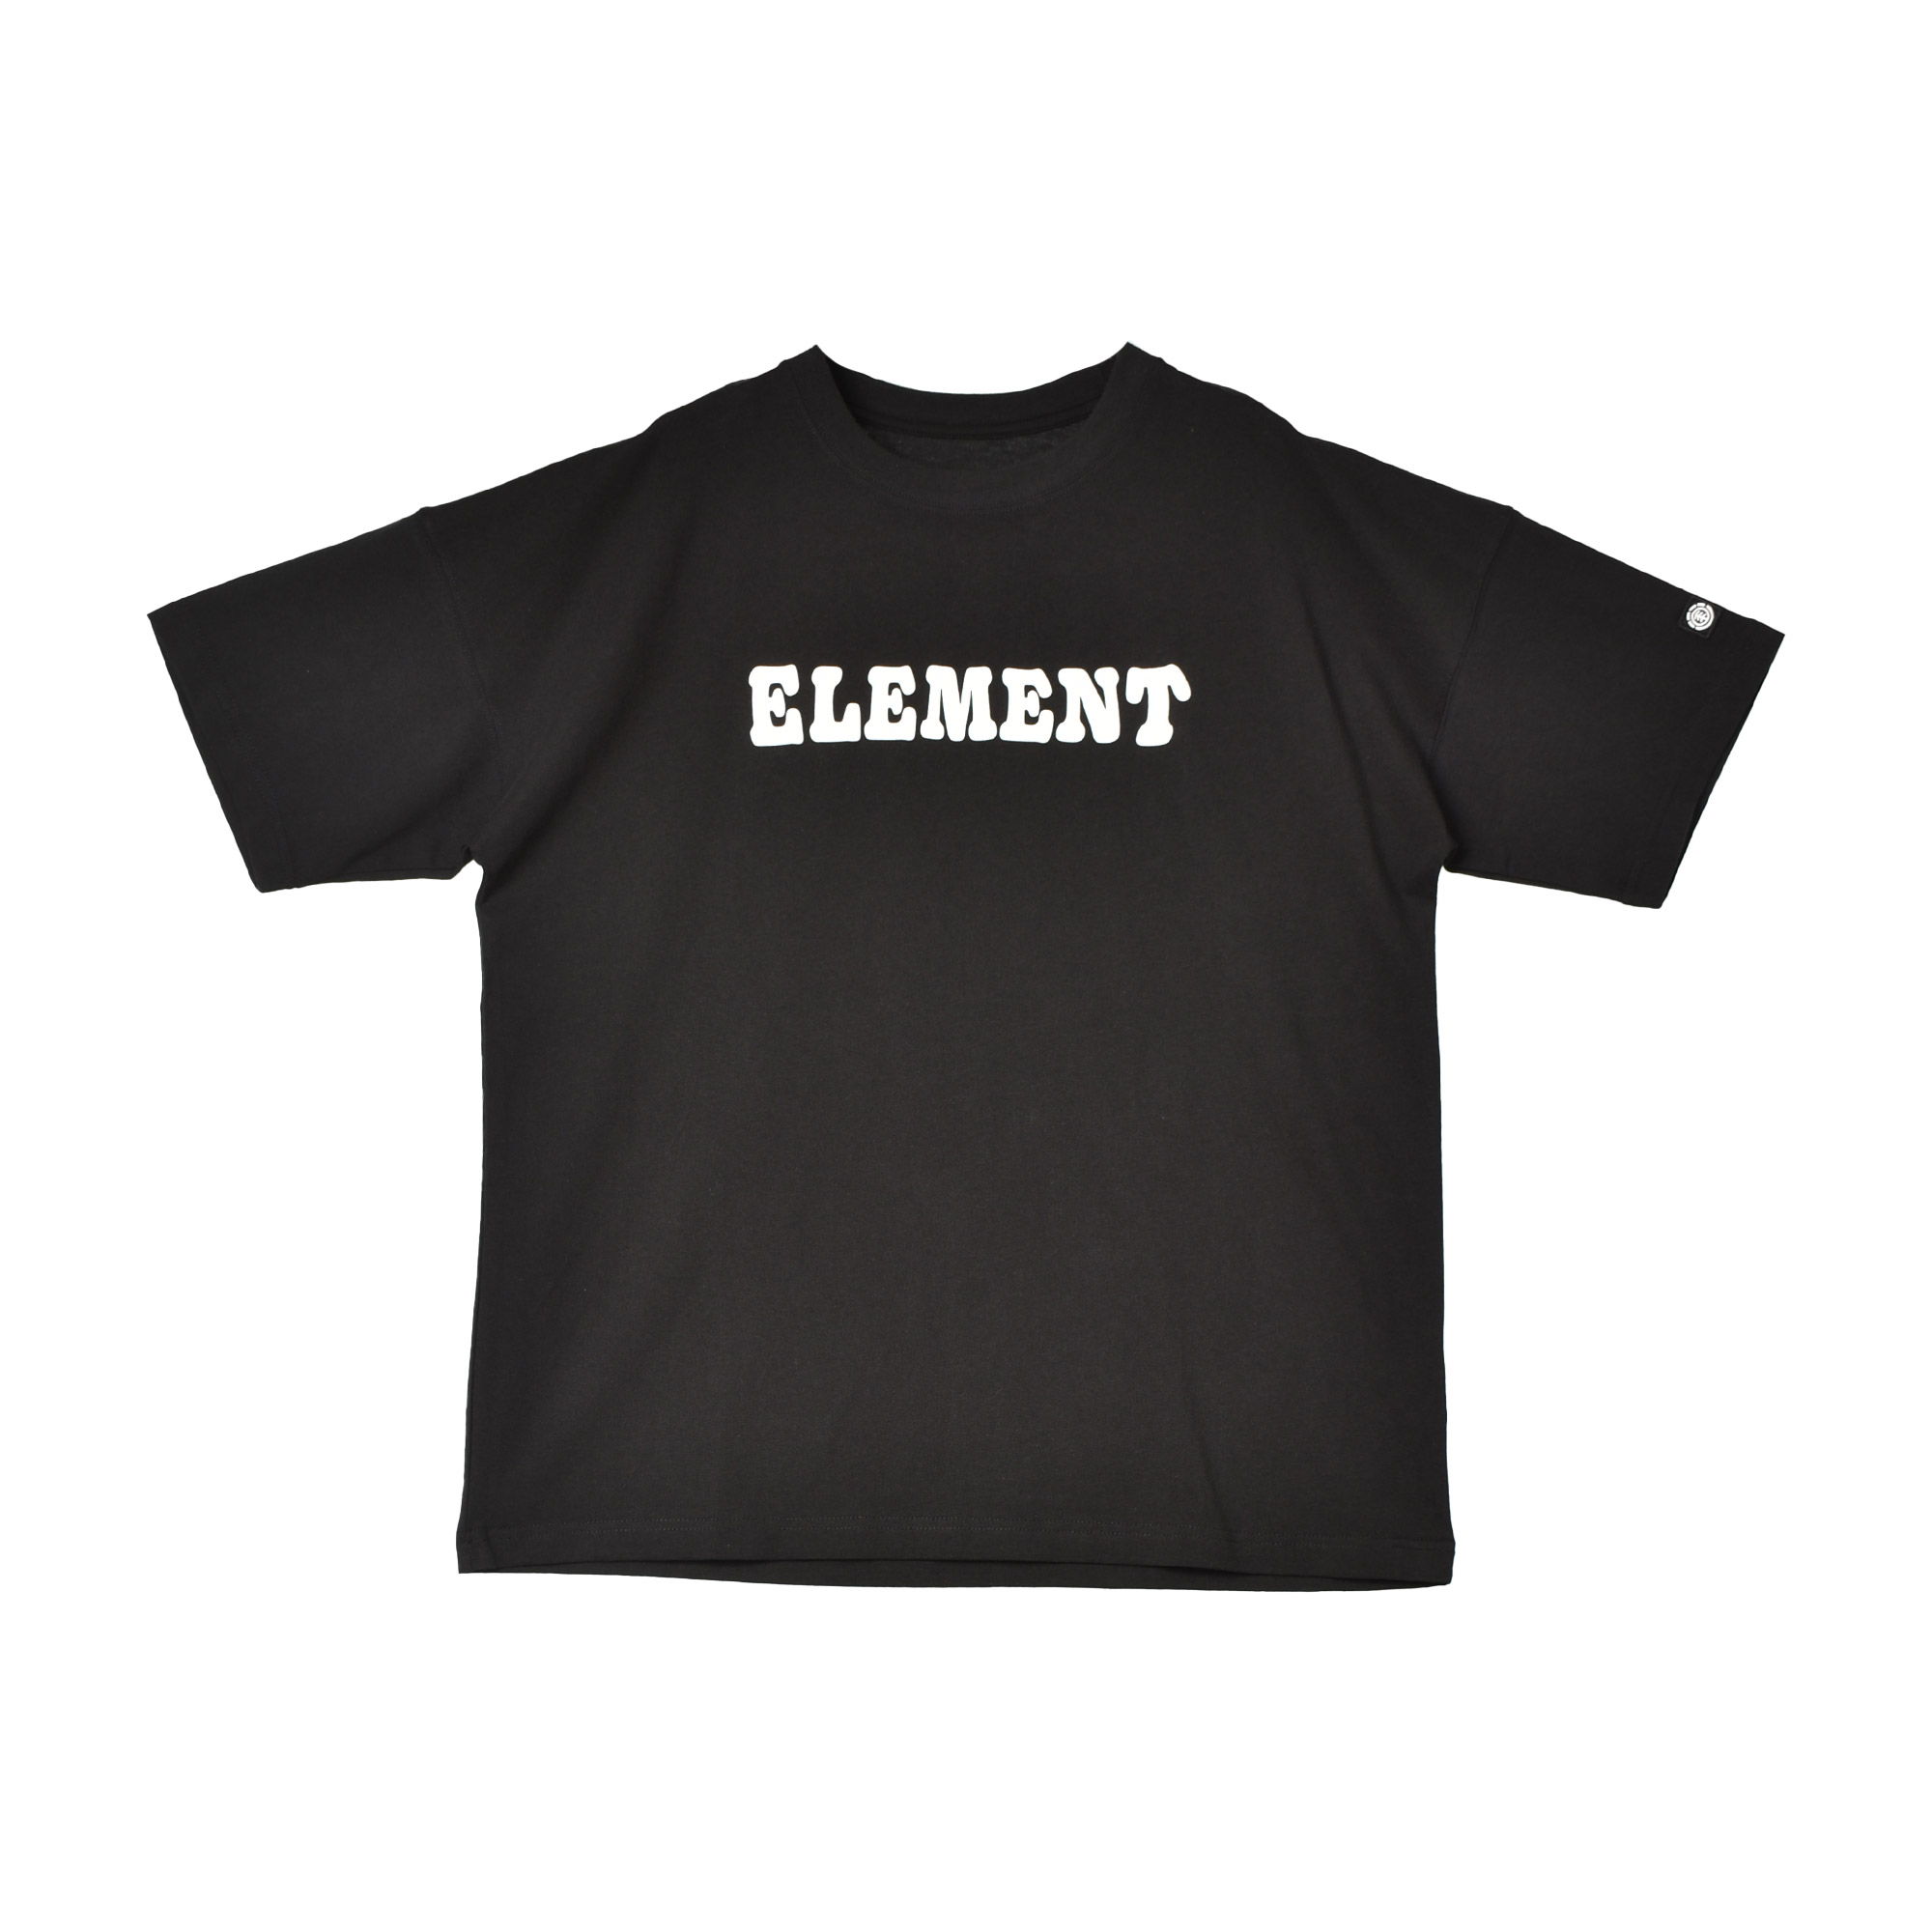 エレメント 半袖Tシャツ メンズ ELEMENT BE021240 ブラック 黒 ホワイト 白 トッ...